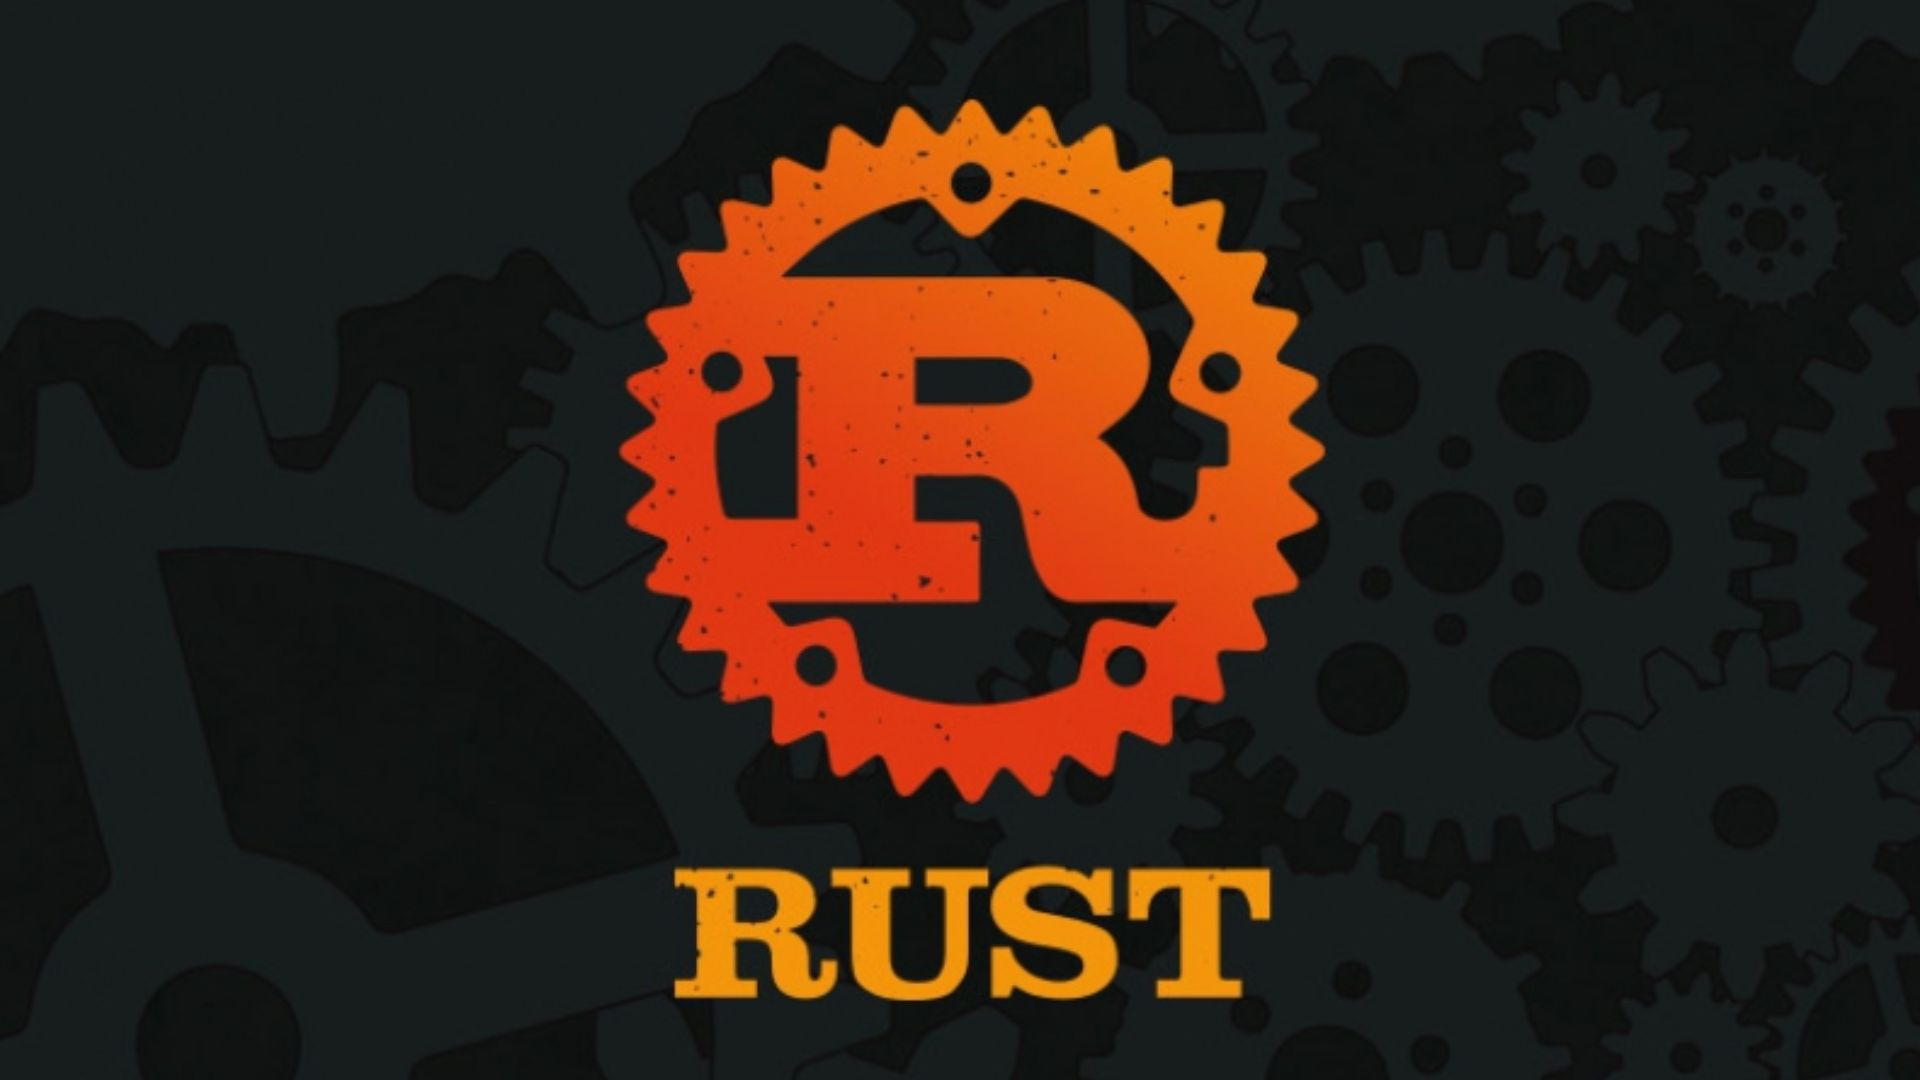  Rust được sáng tạo vào năm 2006 bởi Graydon Hoarer tại Mozilla